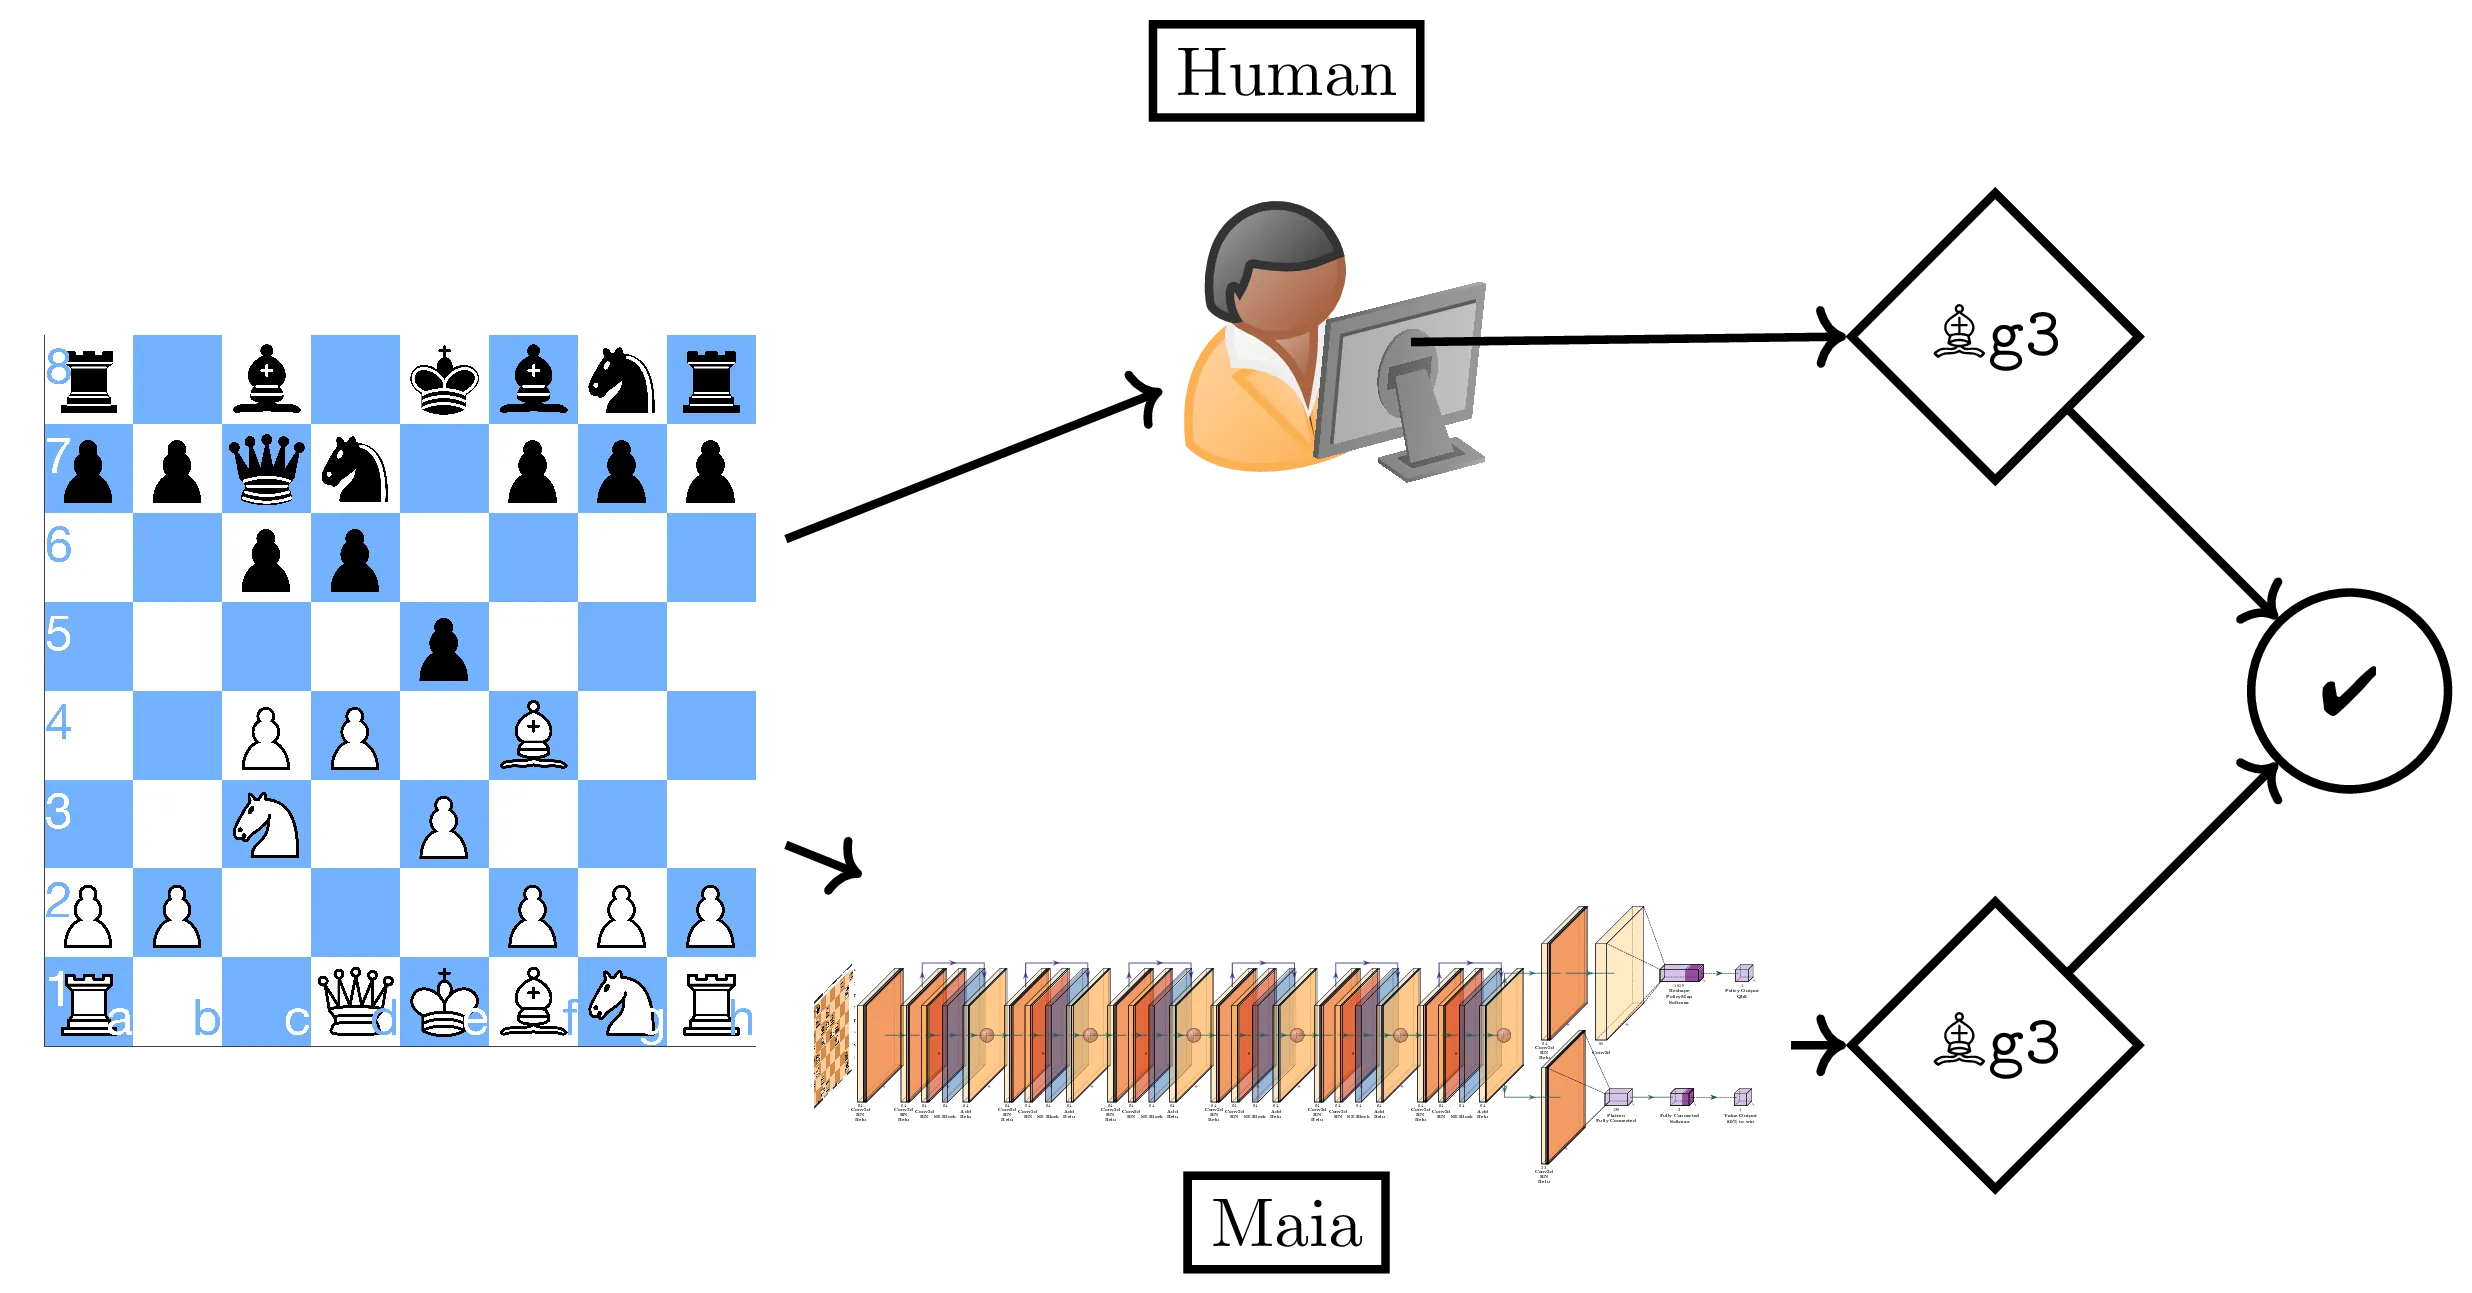 Chess: Computer v. Human